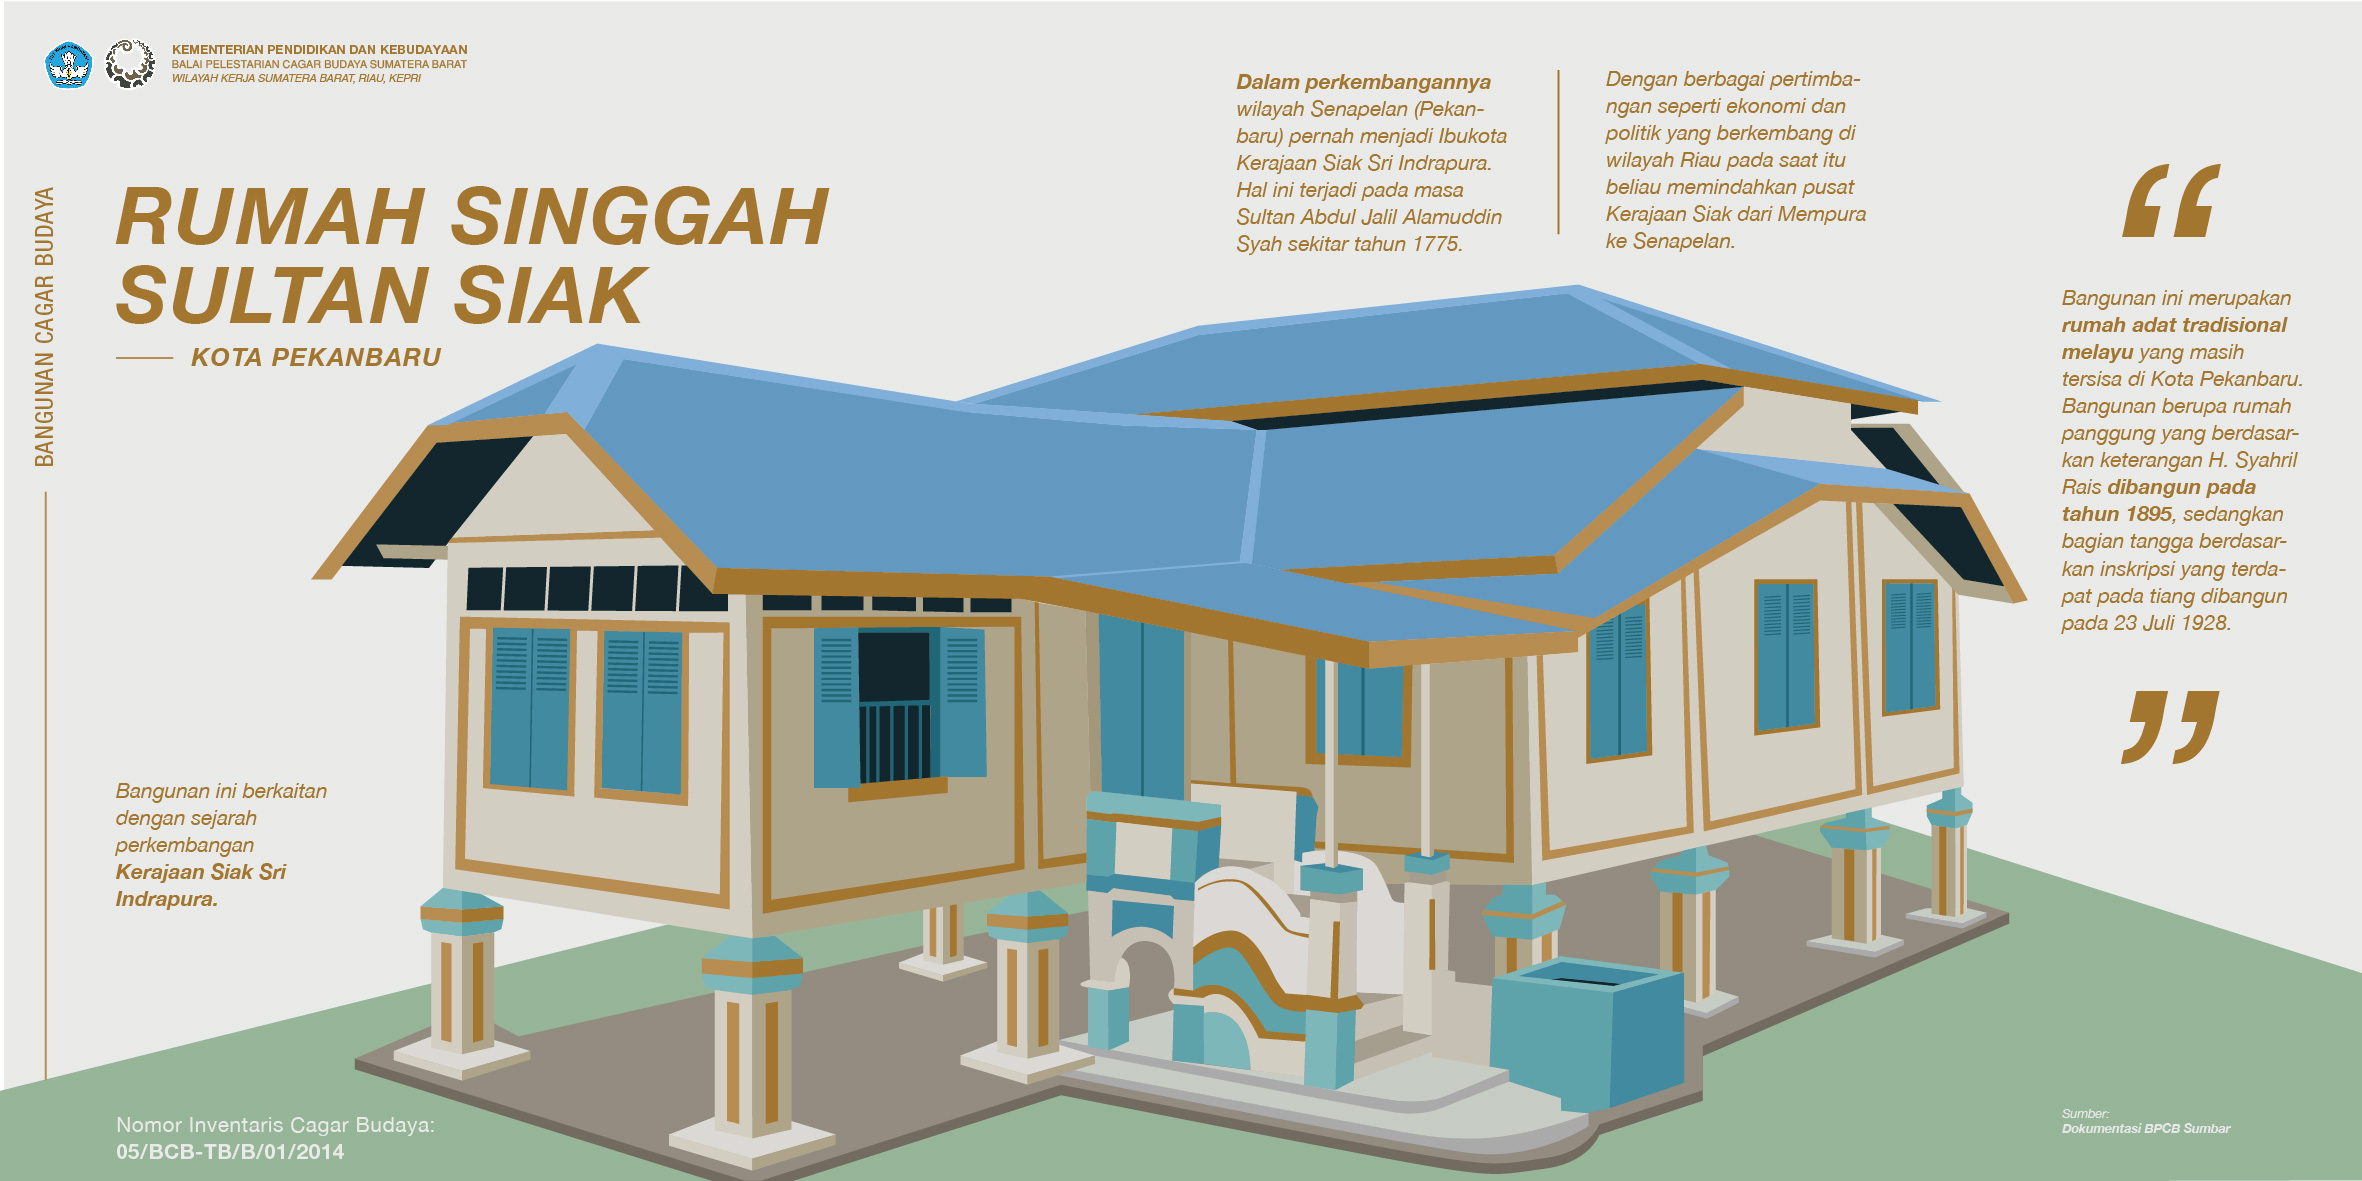 Mengenal Rumah Singgah Sultan di Pekanbaru